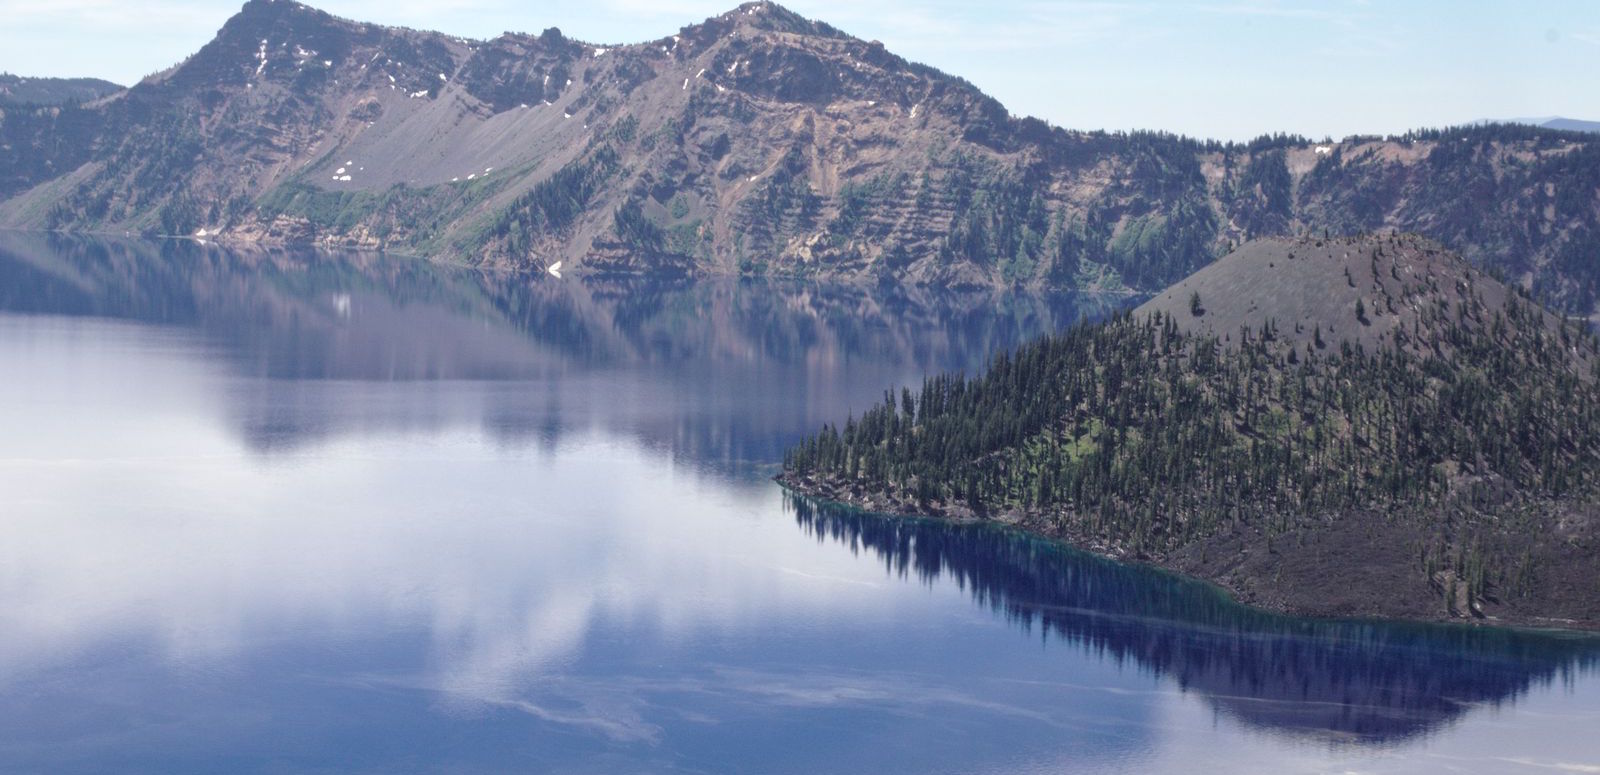 le parc national de Crater Lake dans l'Oregon. Ca c'est Wizard Island